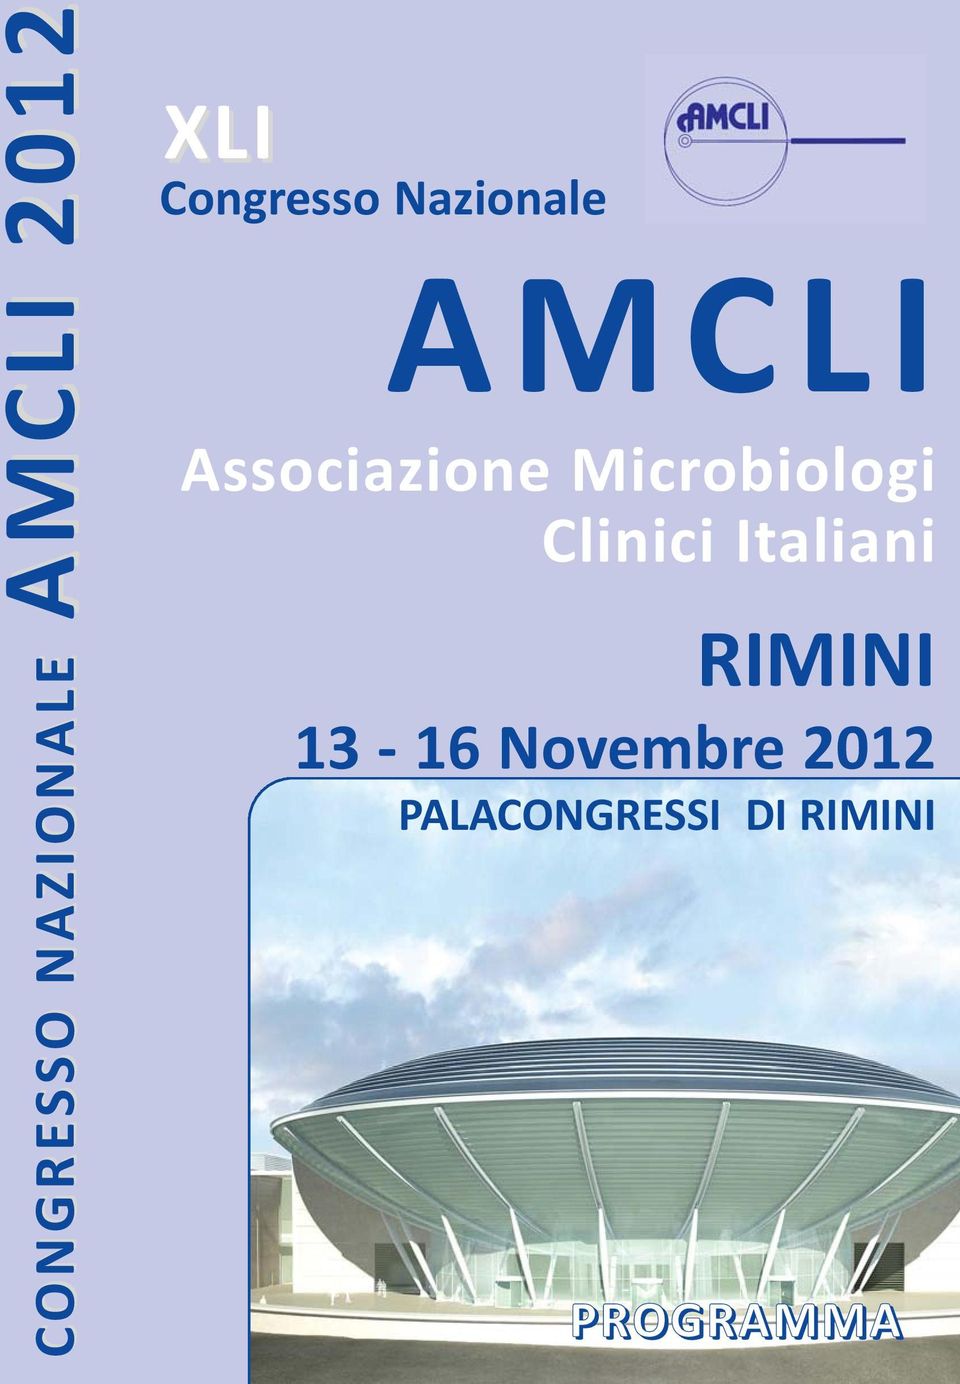 Microbiologi Clinici Italiani RIMINI 13